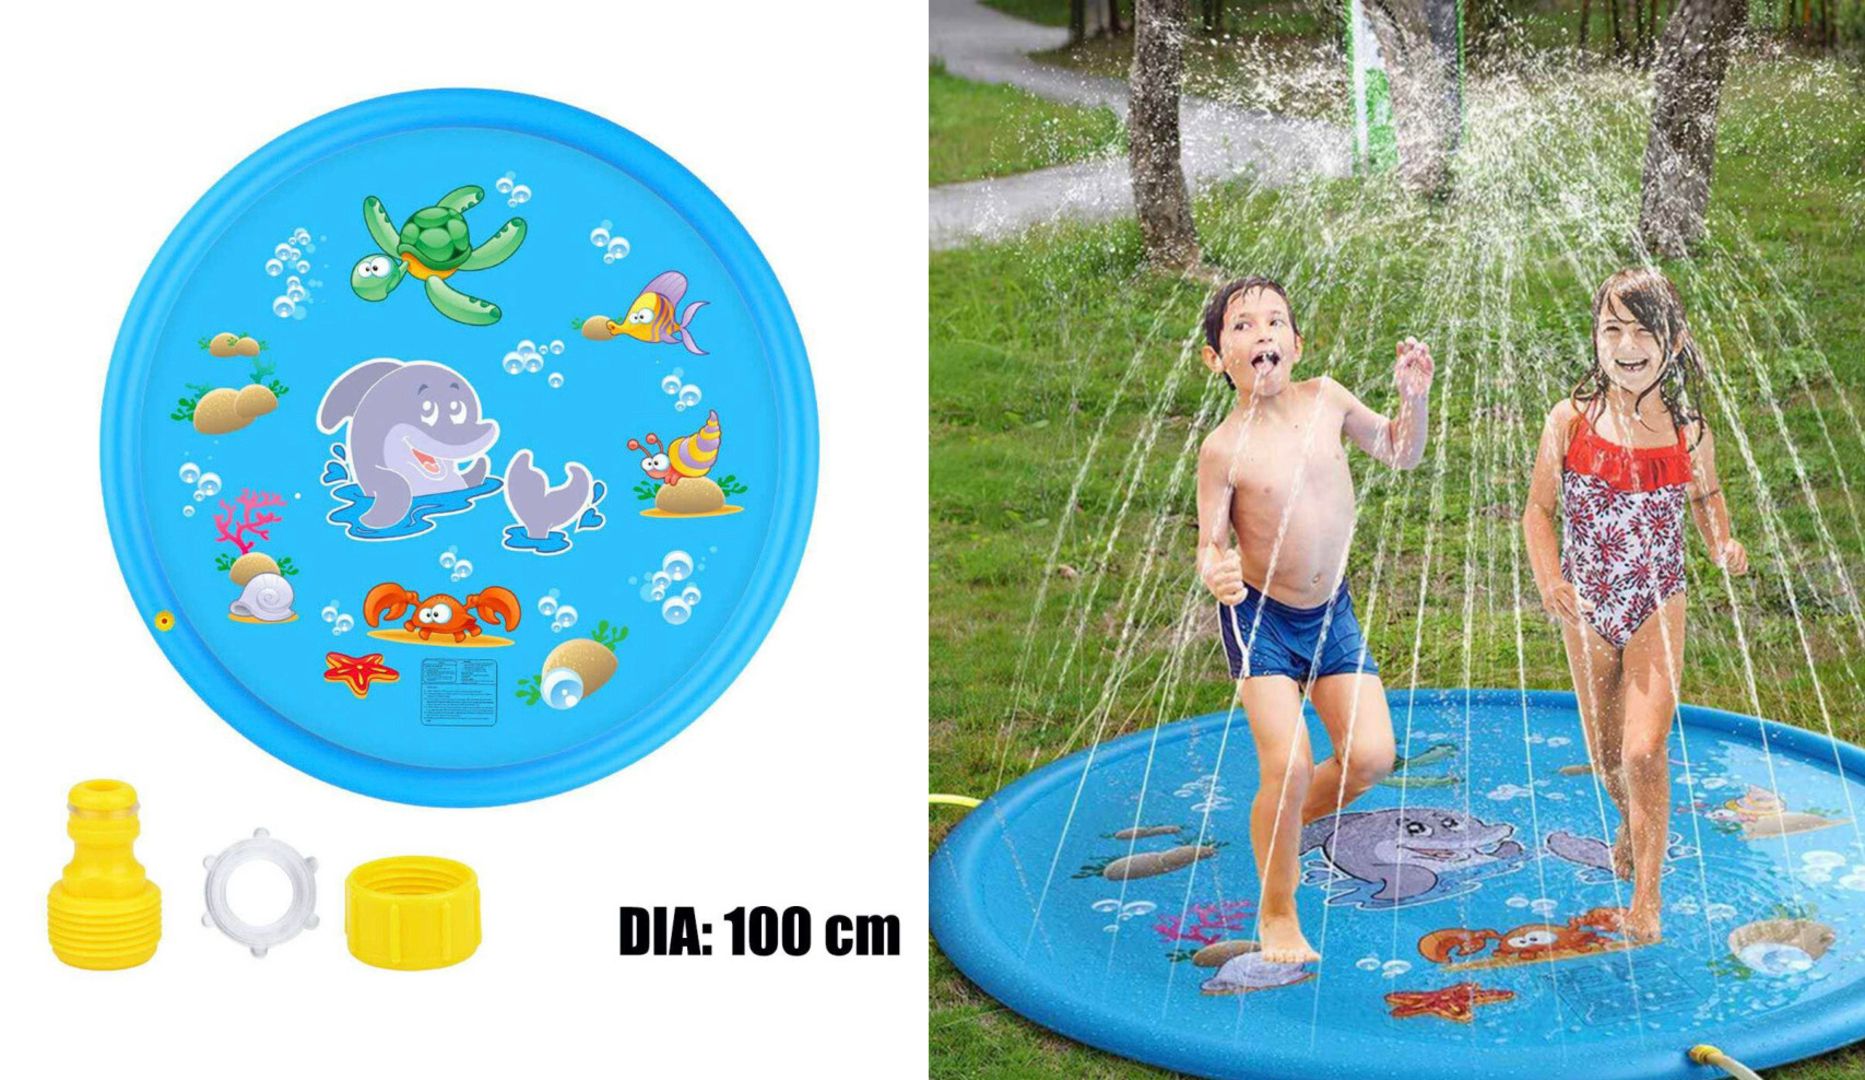 NYHED: Sprinkler-pool